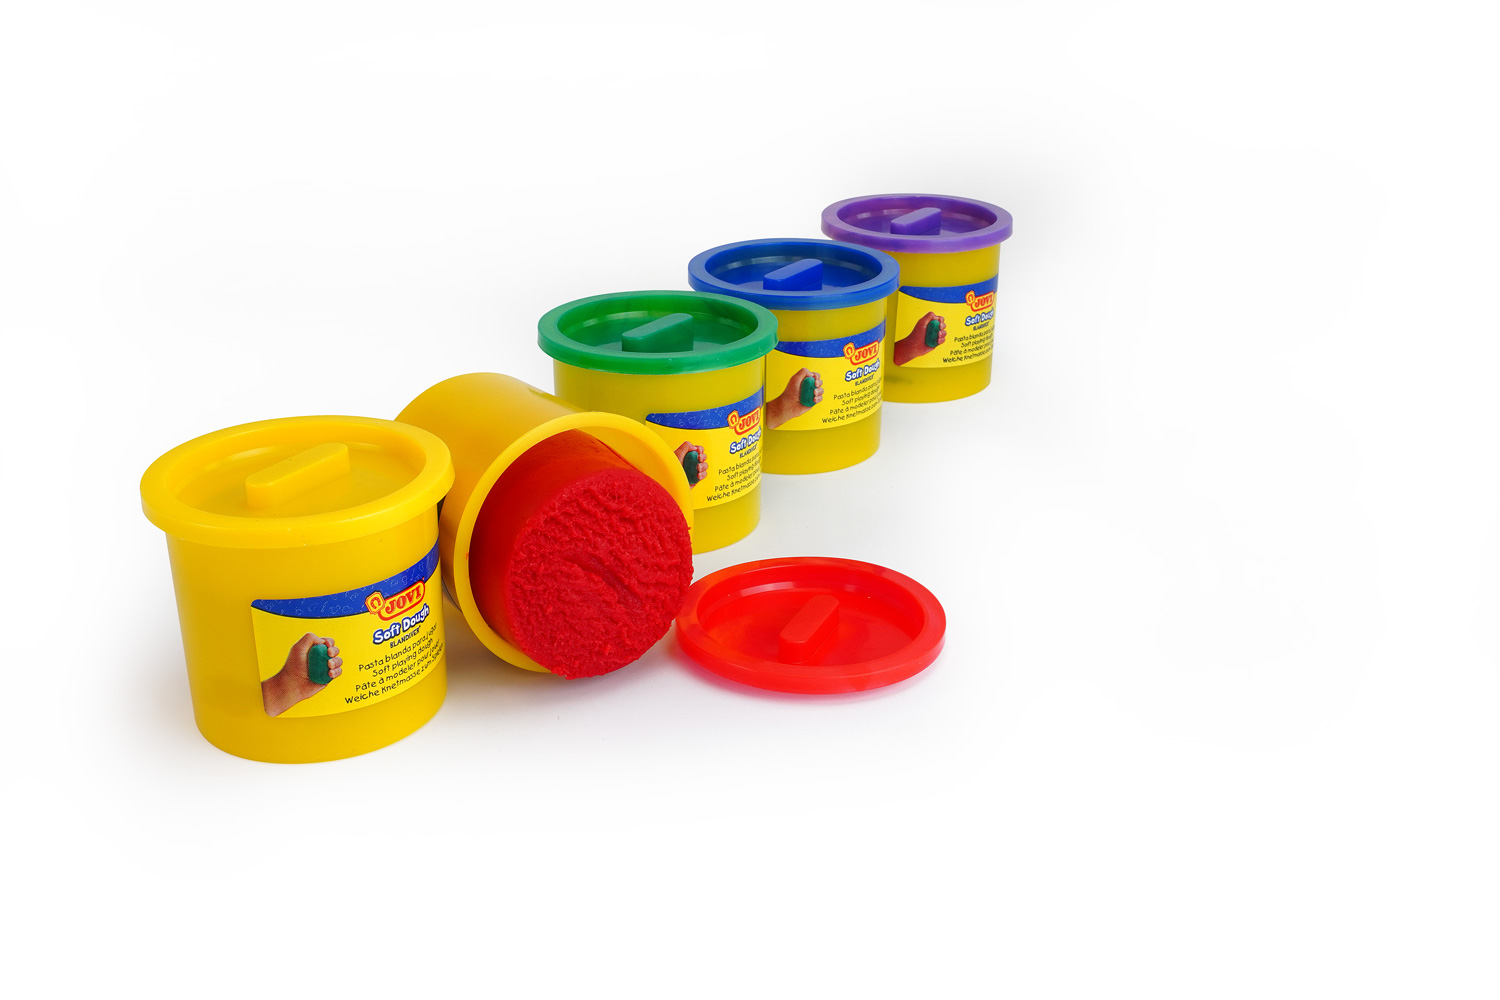 Pâte à modeler - 5 pots et accessoires - Enfant - Dès 2 ans - Boîte - Jovi  - Pâte à modeler recharge - Creavea